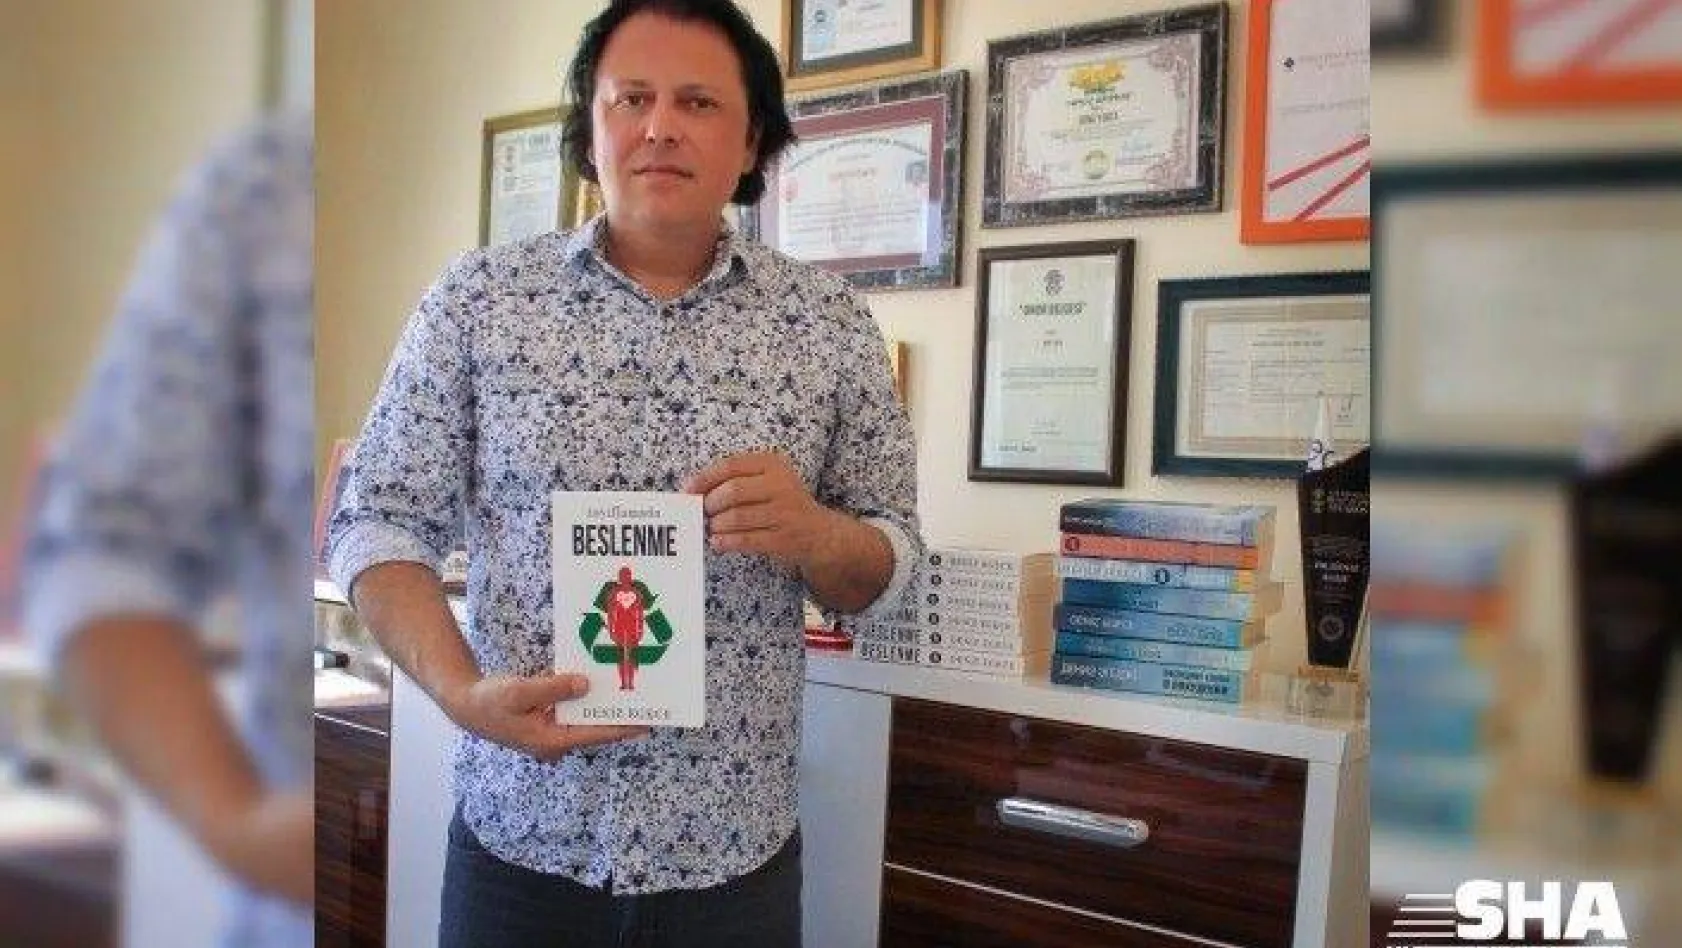 Ödüllü yazarın yeni kitabı 'Zayıflamada Beslenme' çıktı